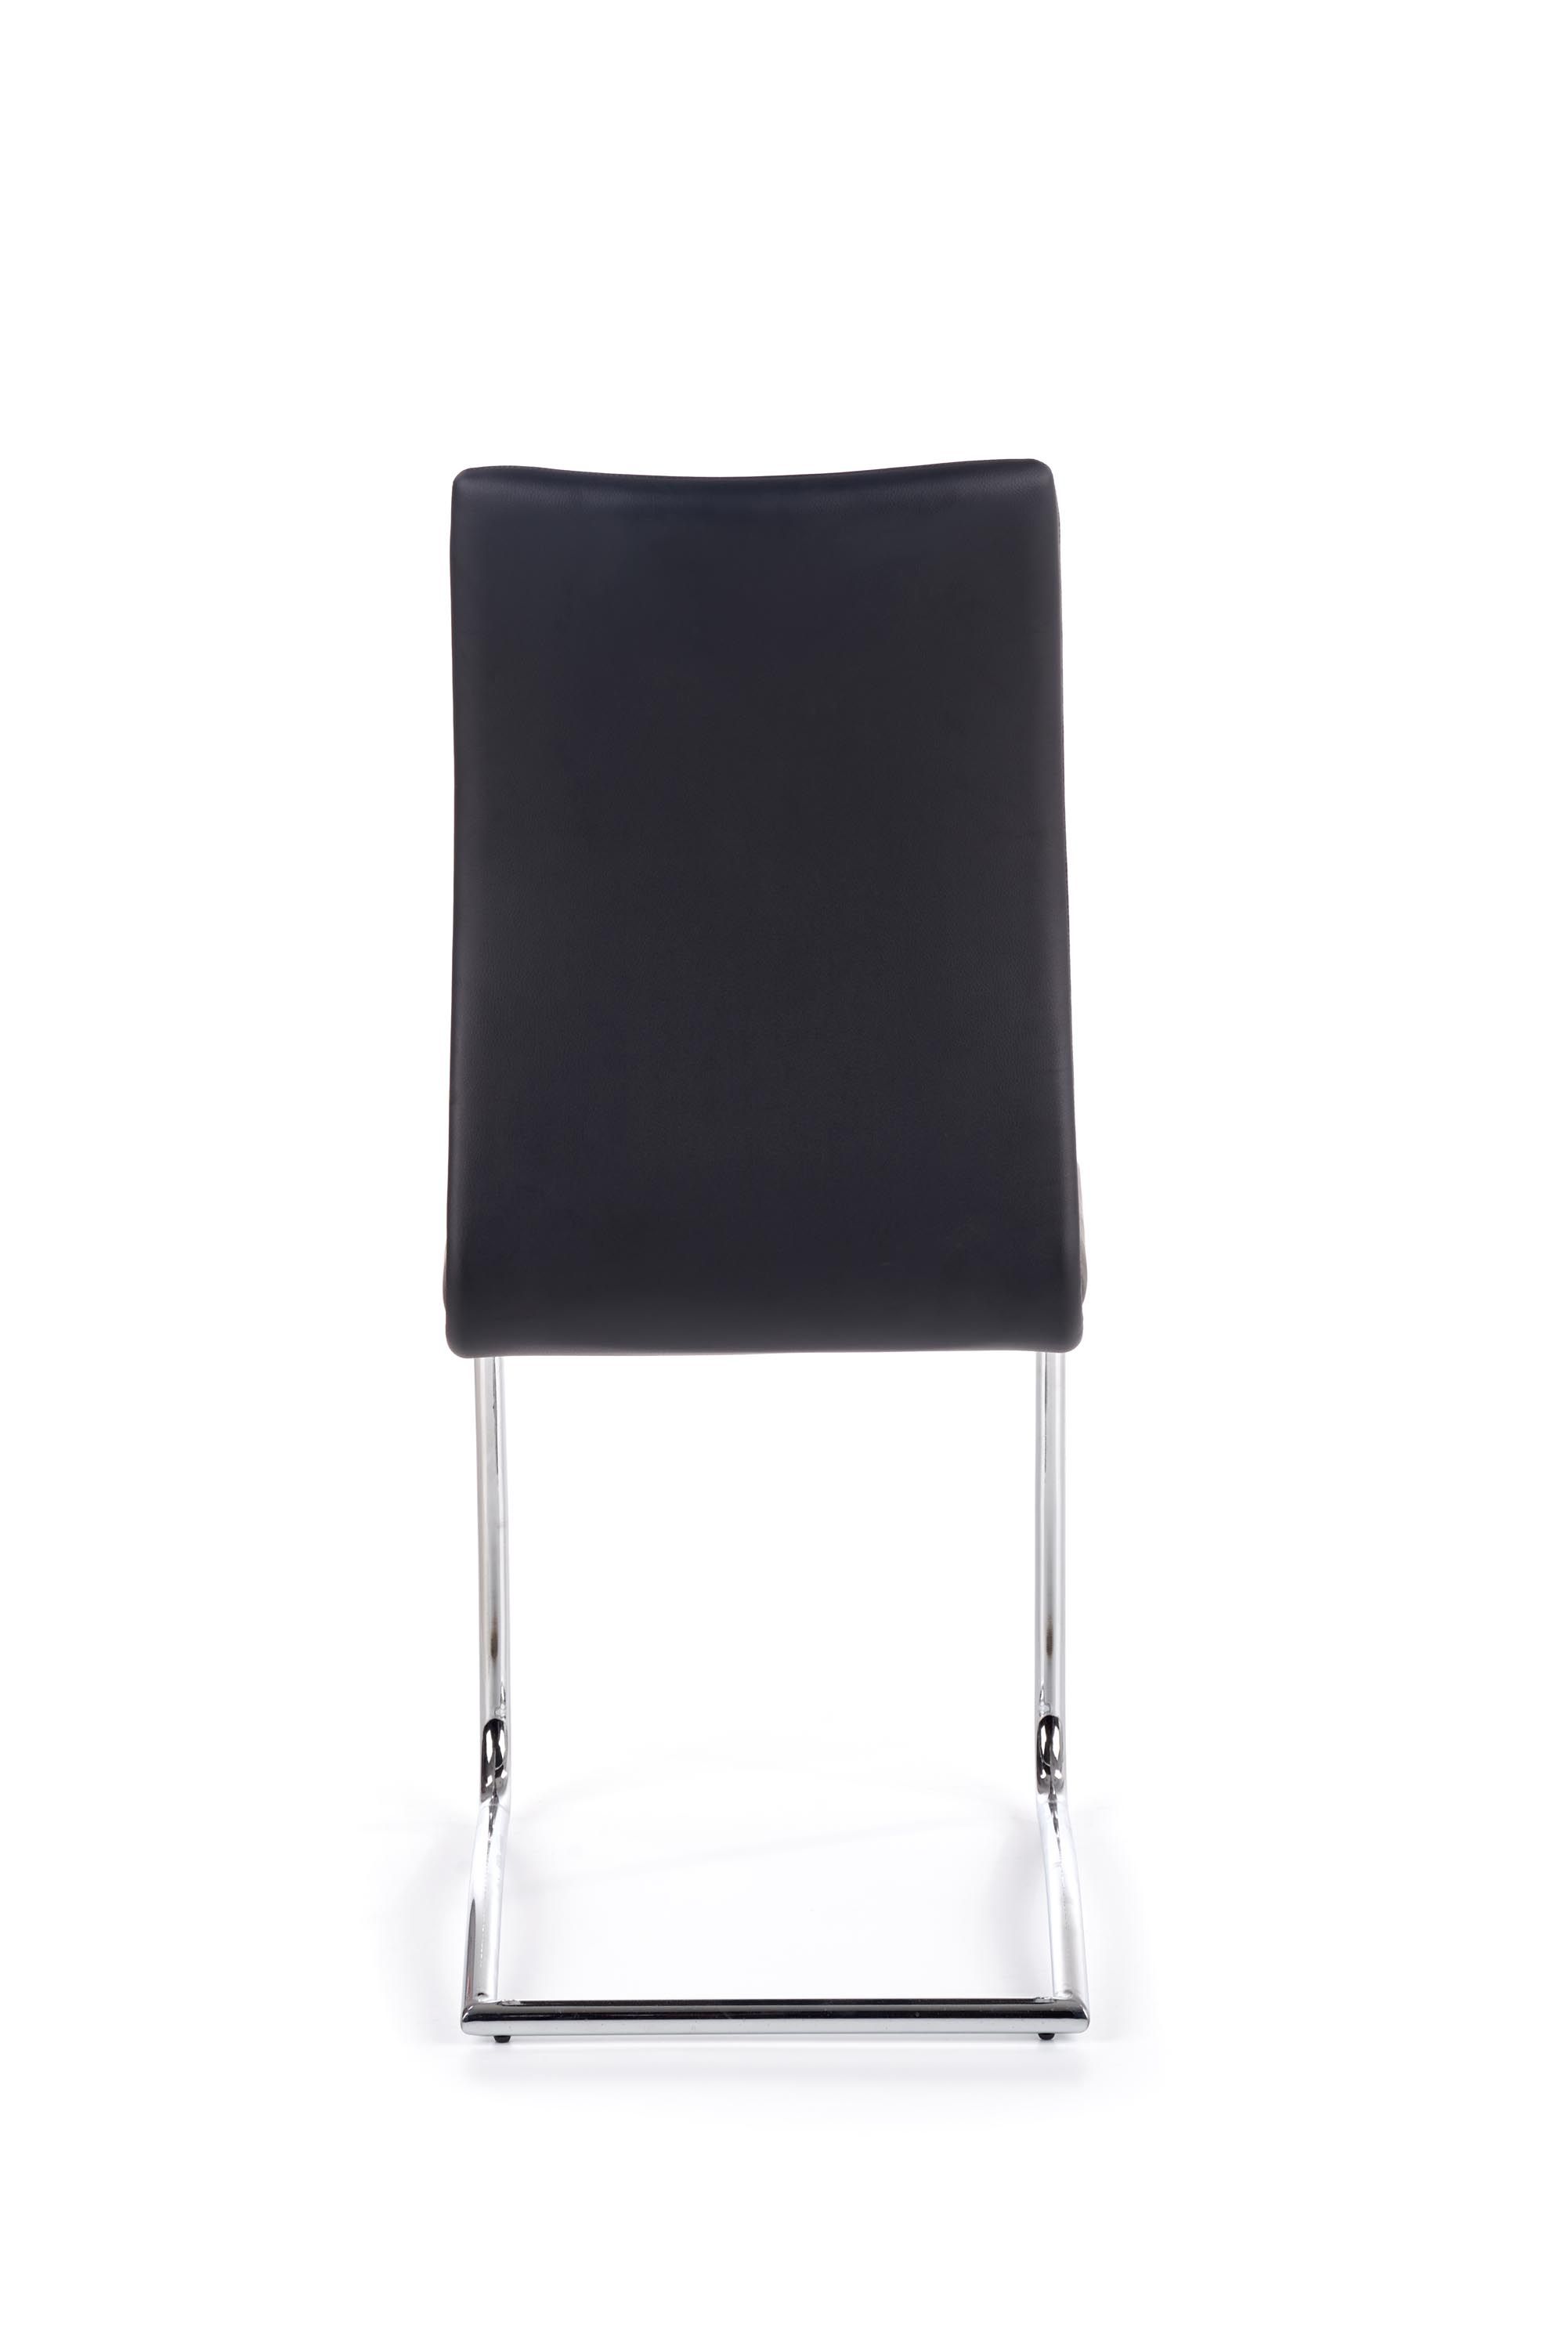 k180 krzeslo czarny (1p=4szt)